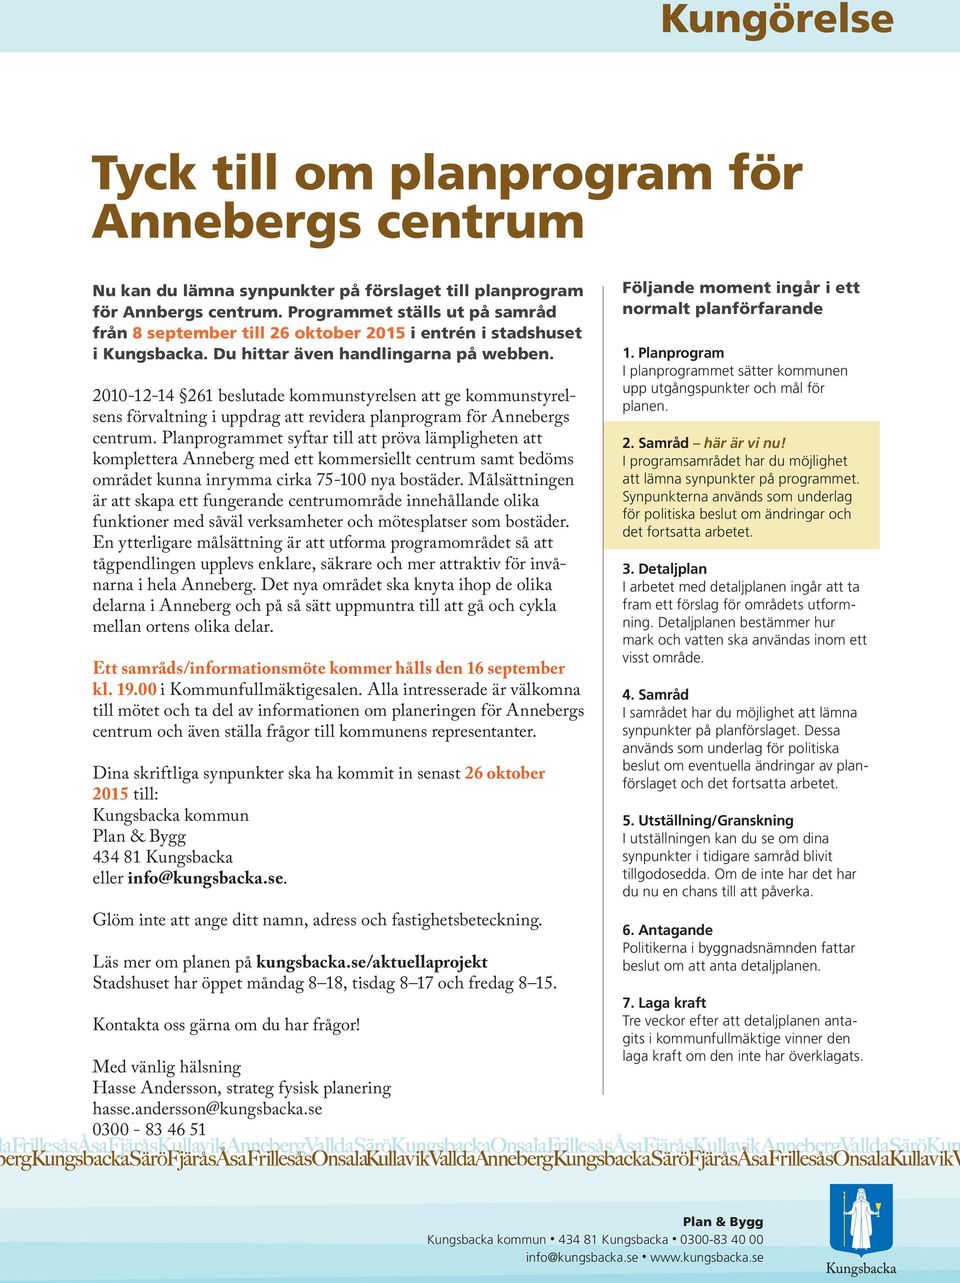 2010-12-14 261 beslutade kommunstyrelsen att ge kommunstyrelsens förvaltning i uppdrag att revidera planprogram för Annebergs centrum.